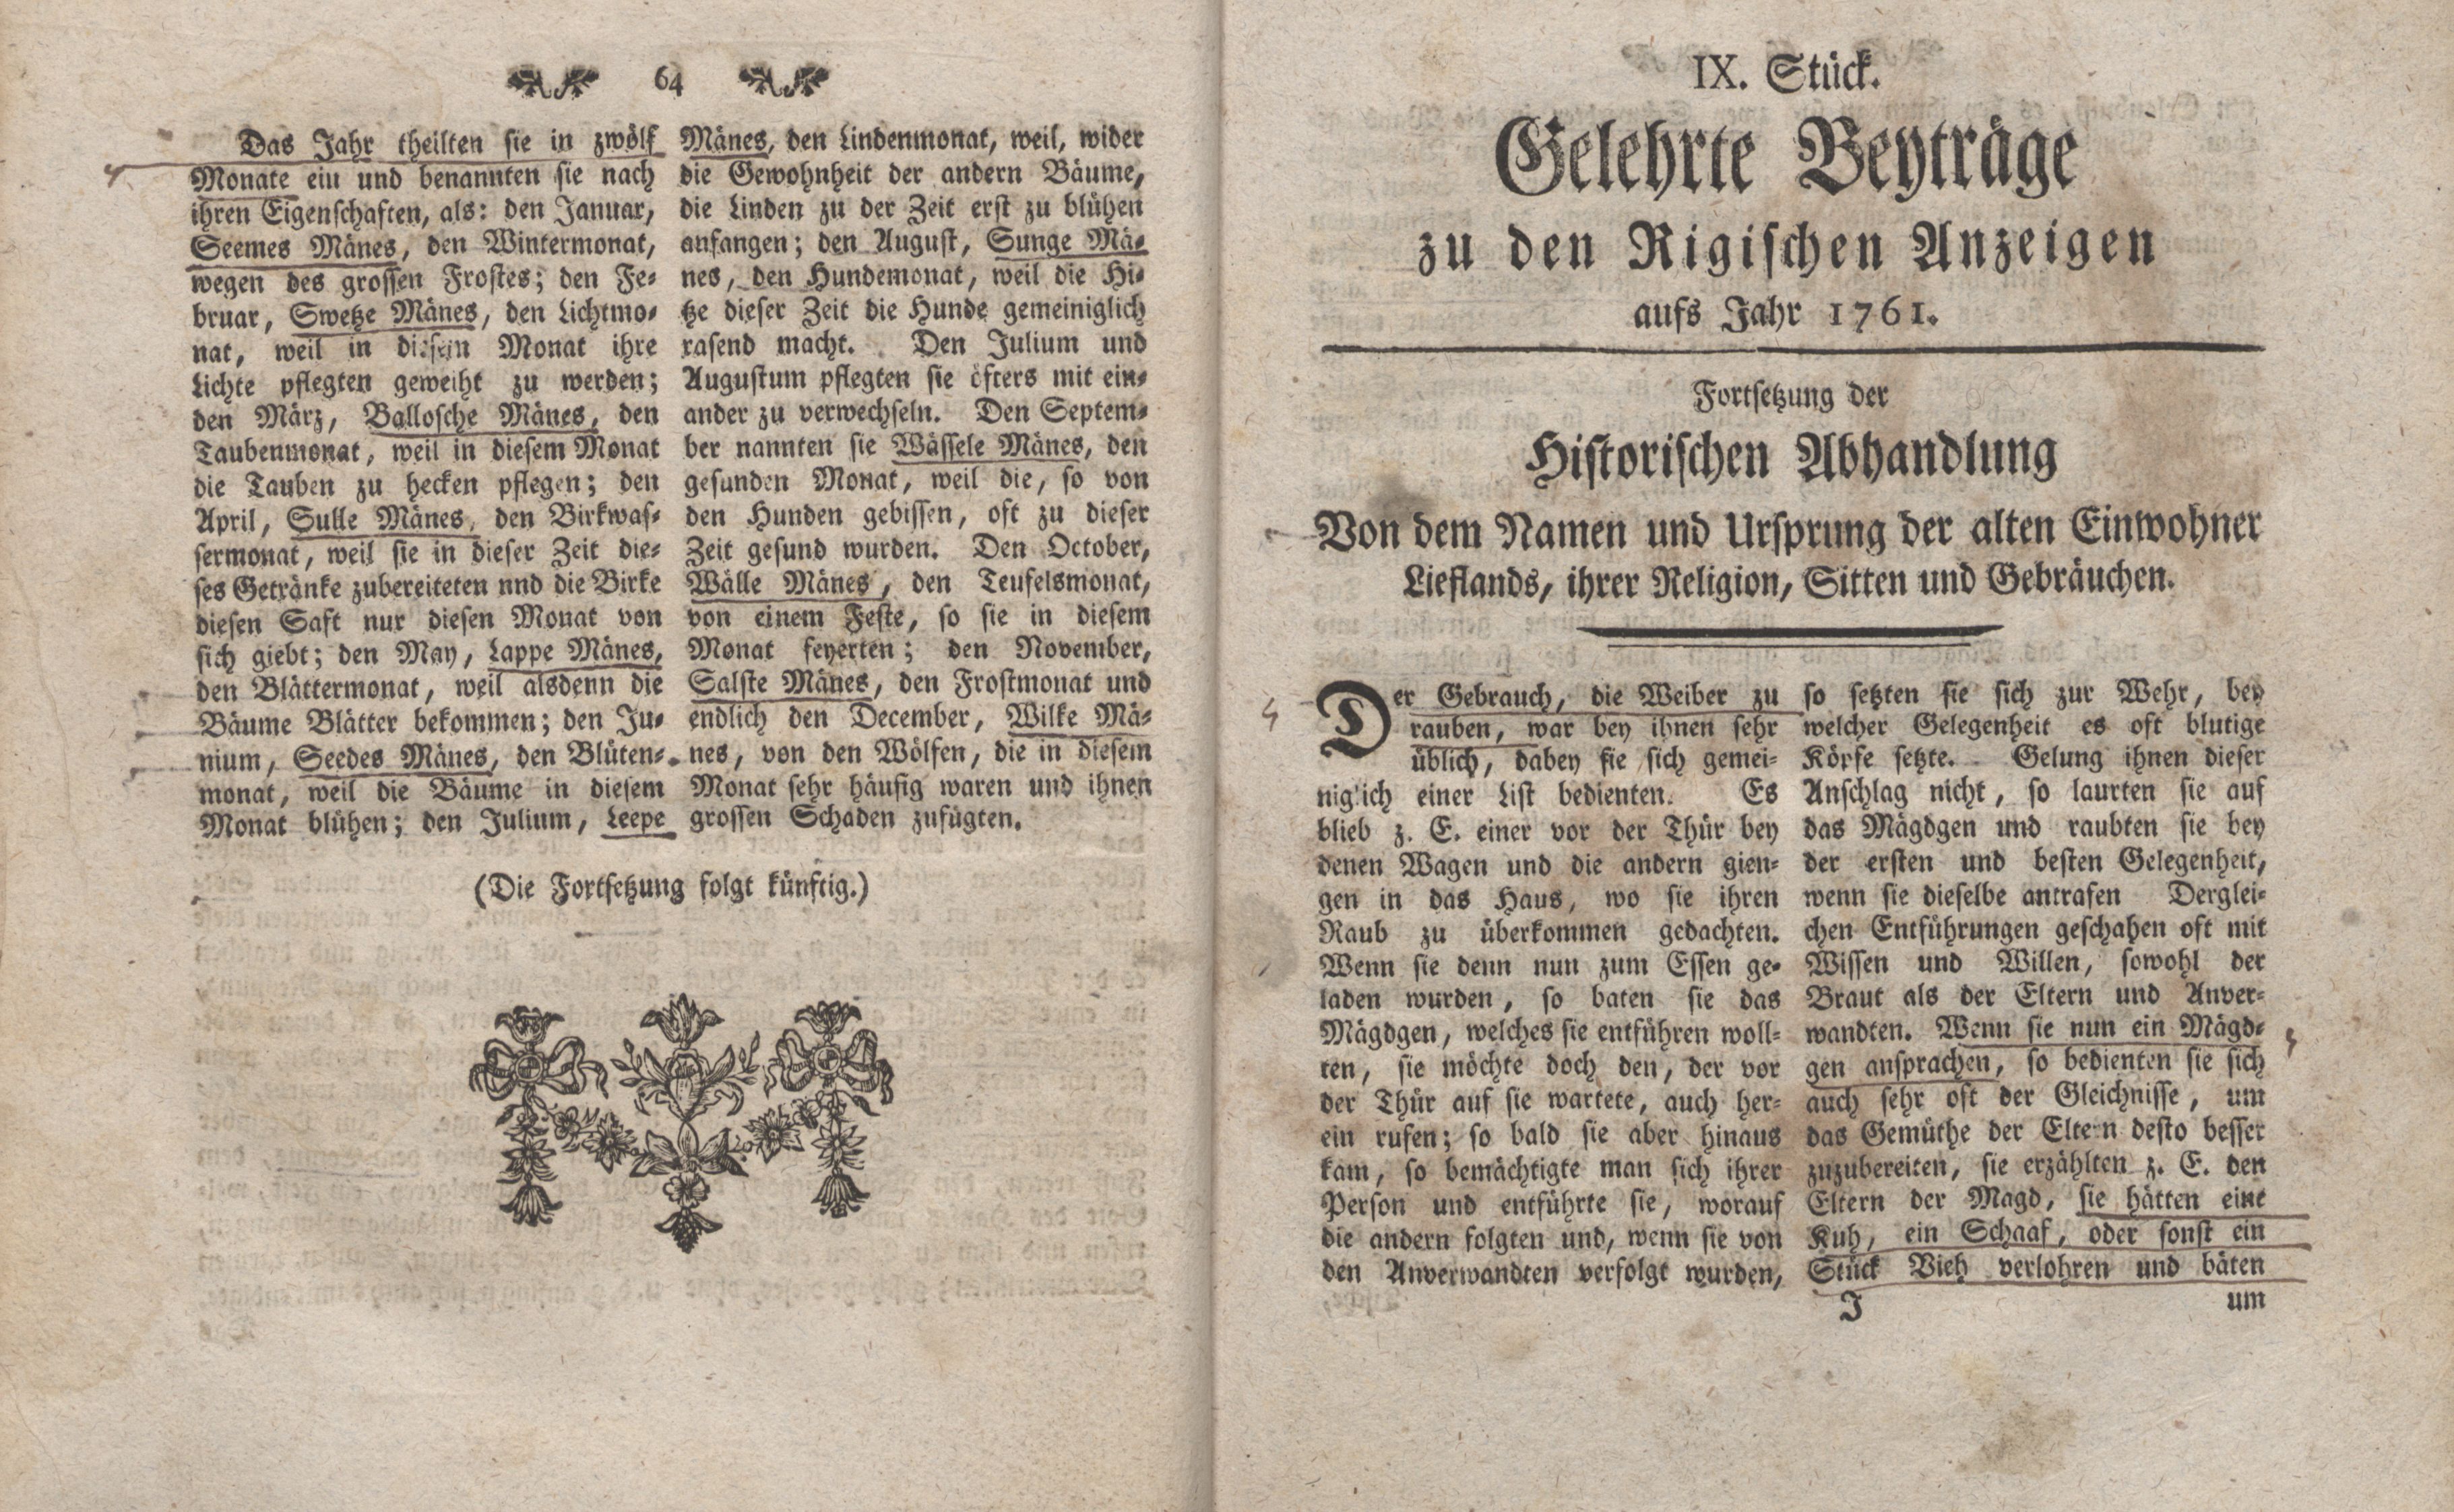 Gelehrte Beyträge zu den Rigischen Anzeigen 1761 (1761) | 32. (64-65) Haupttext